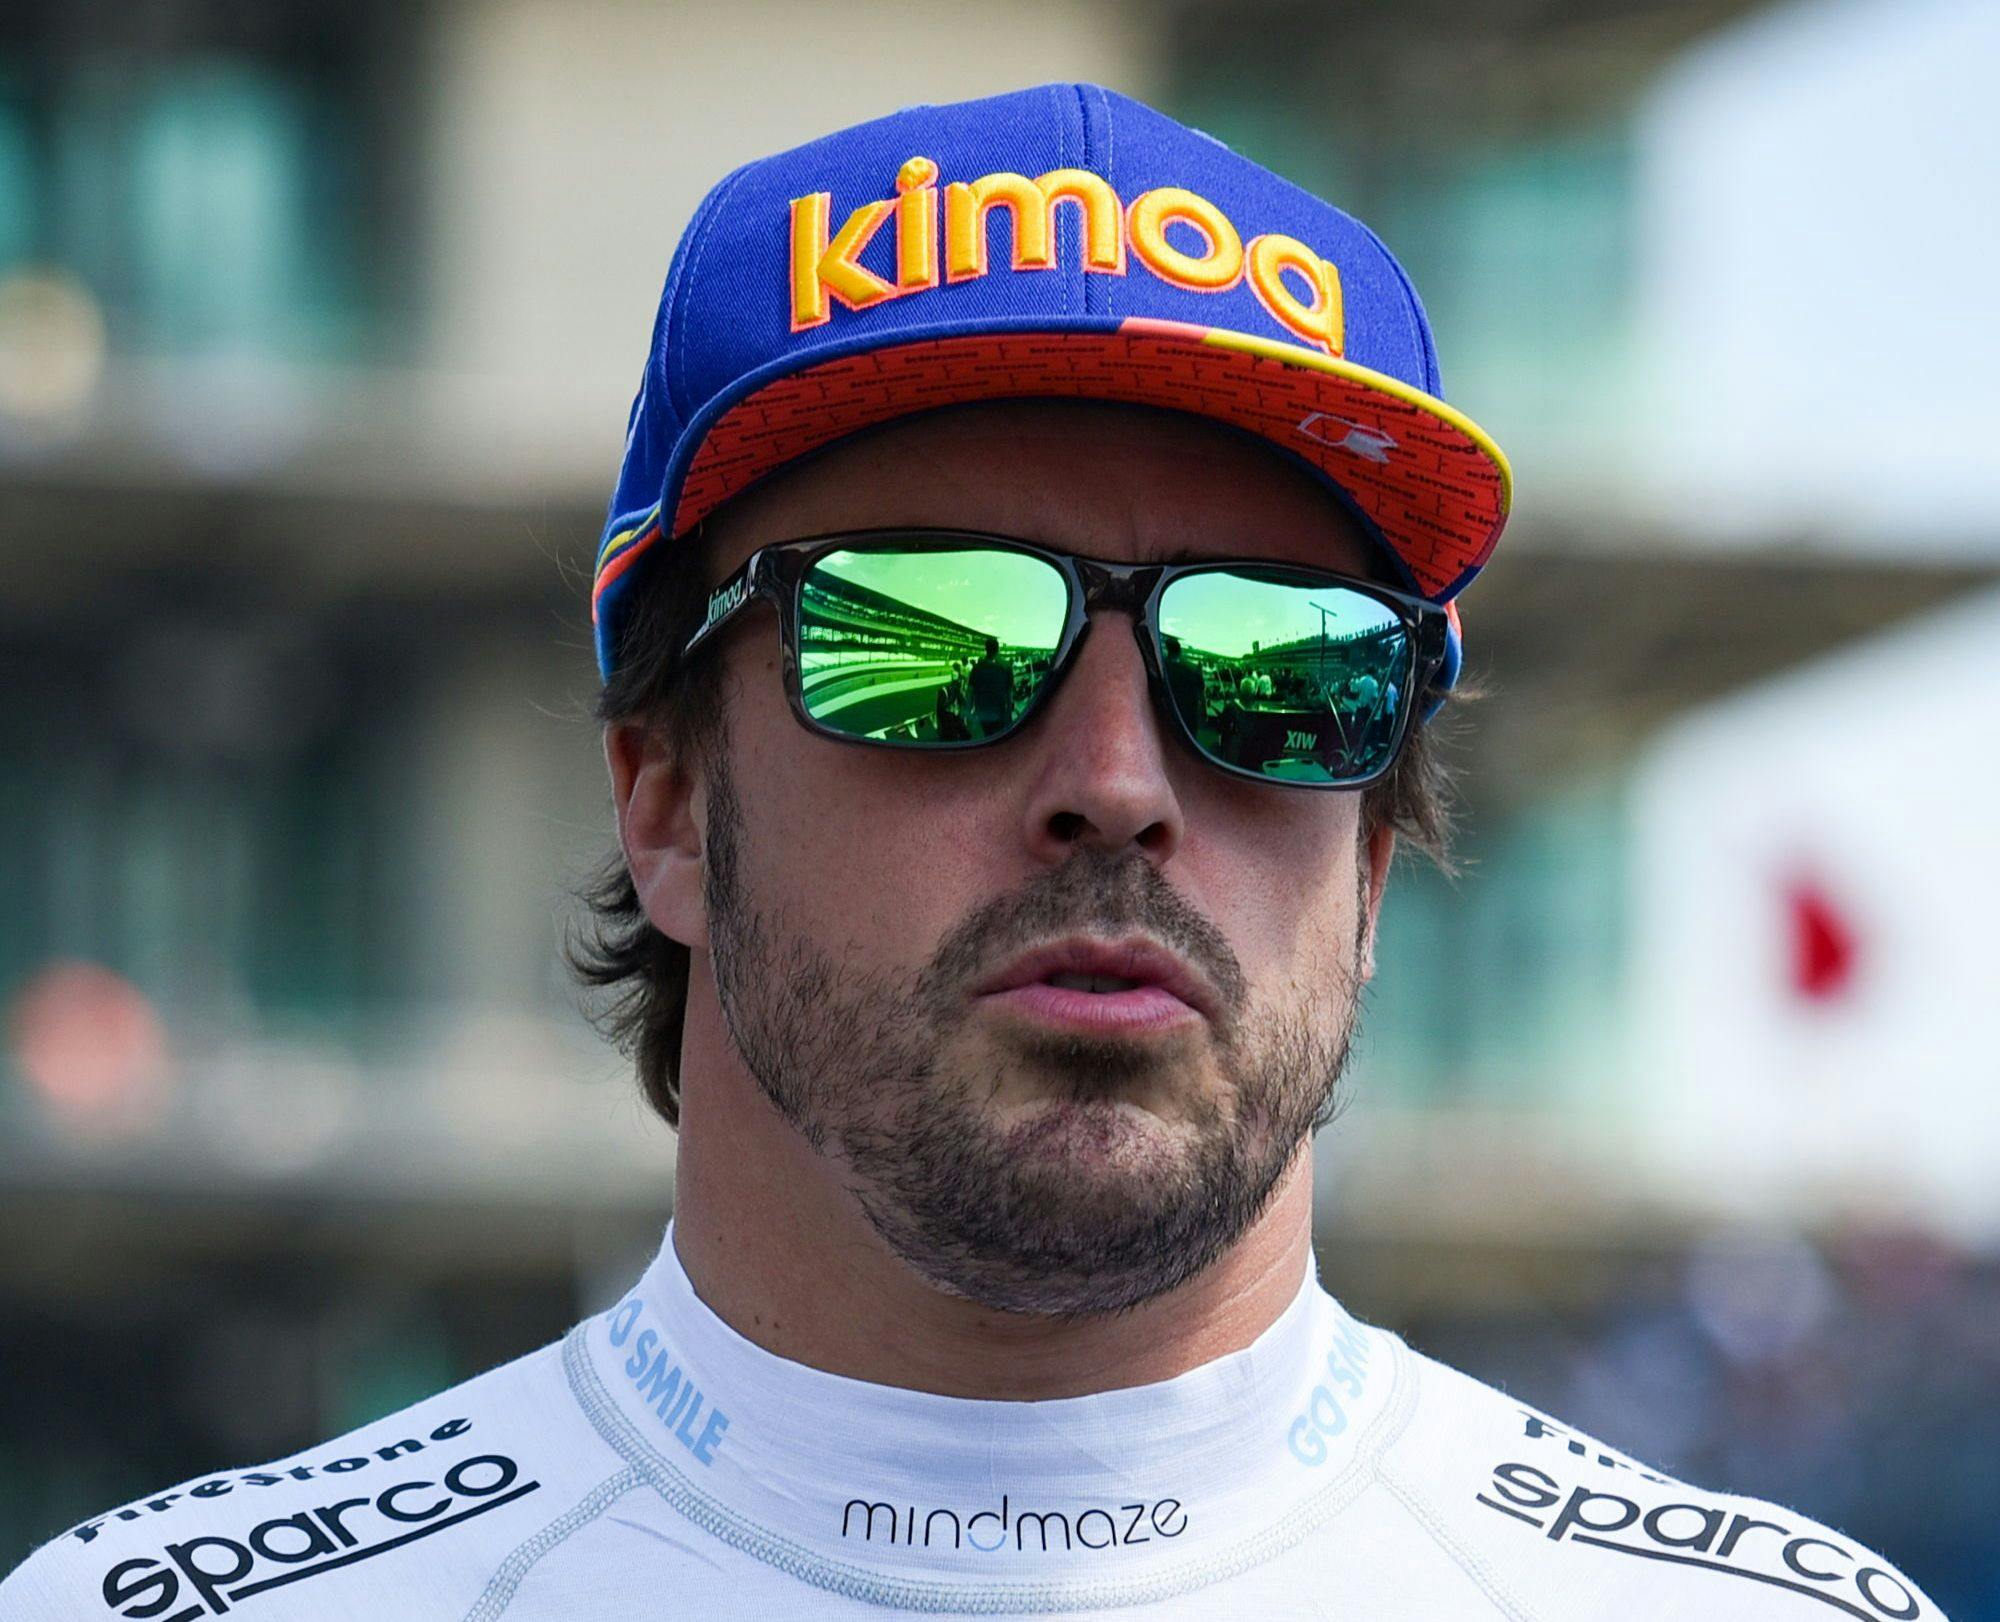 3x3: Dlaczego Alonso wybrał Renault, co czuje Ocon?